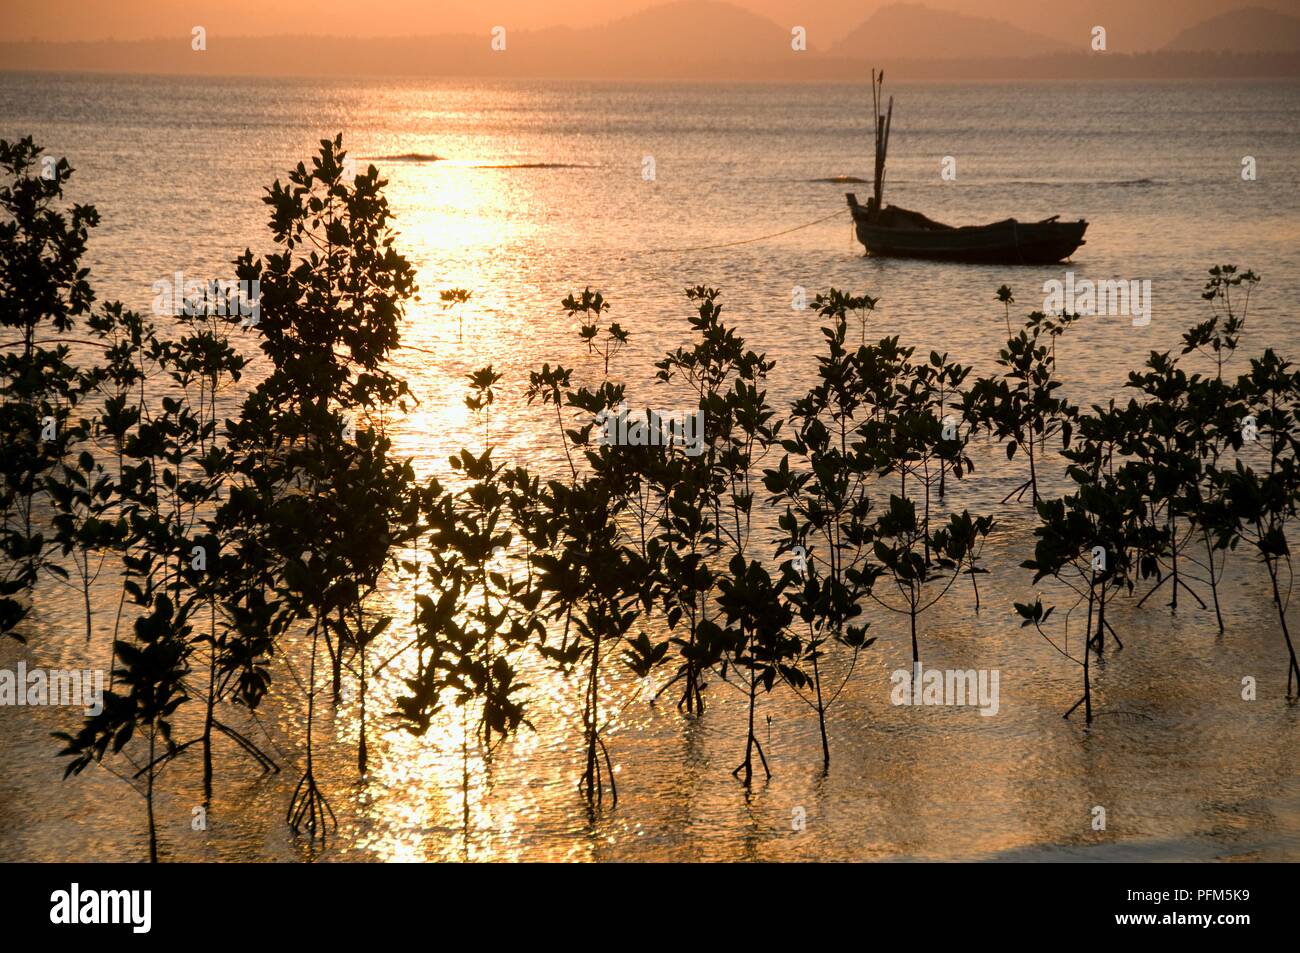 La Thaïlande, la Province de Prachuap Khiri Khan, Bang Saphan Yai, silhouette de bateau de pêche et des arbres dans la mer au coucher du soleil Banque D'Images